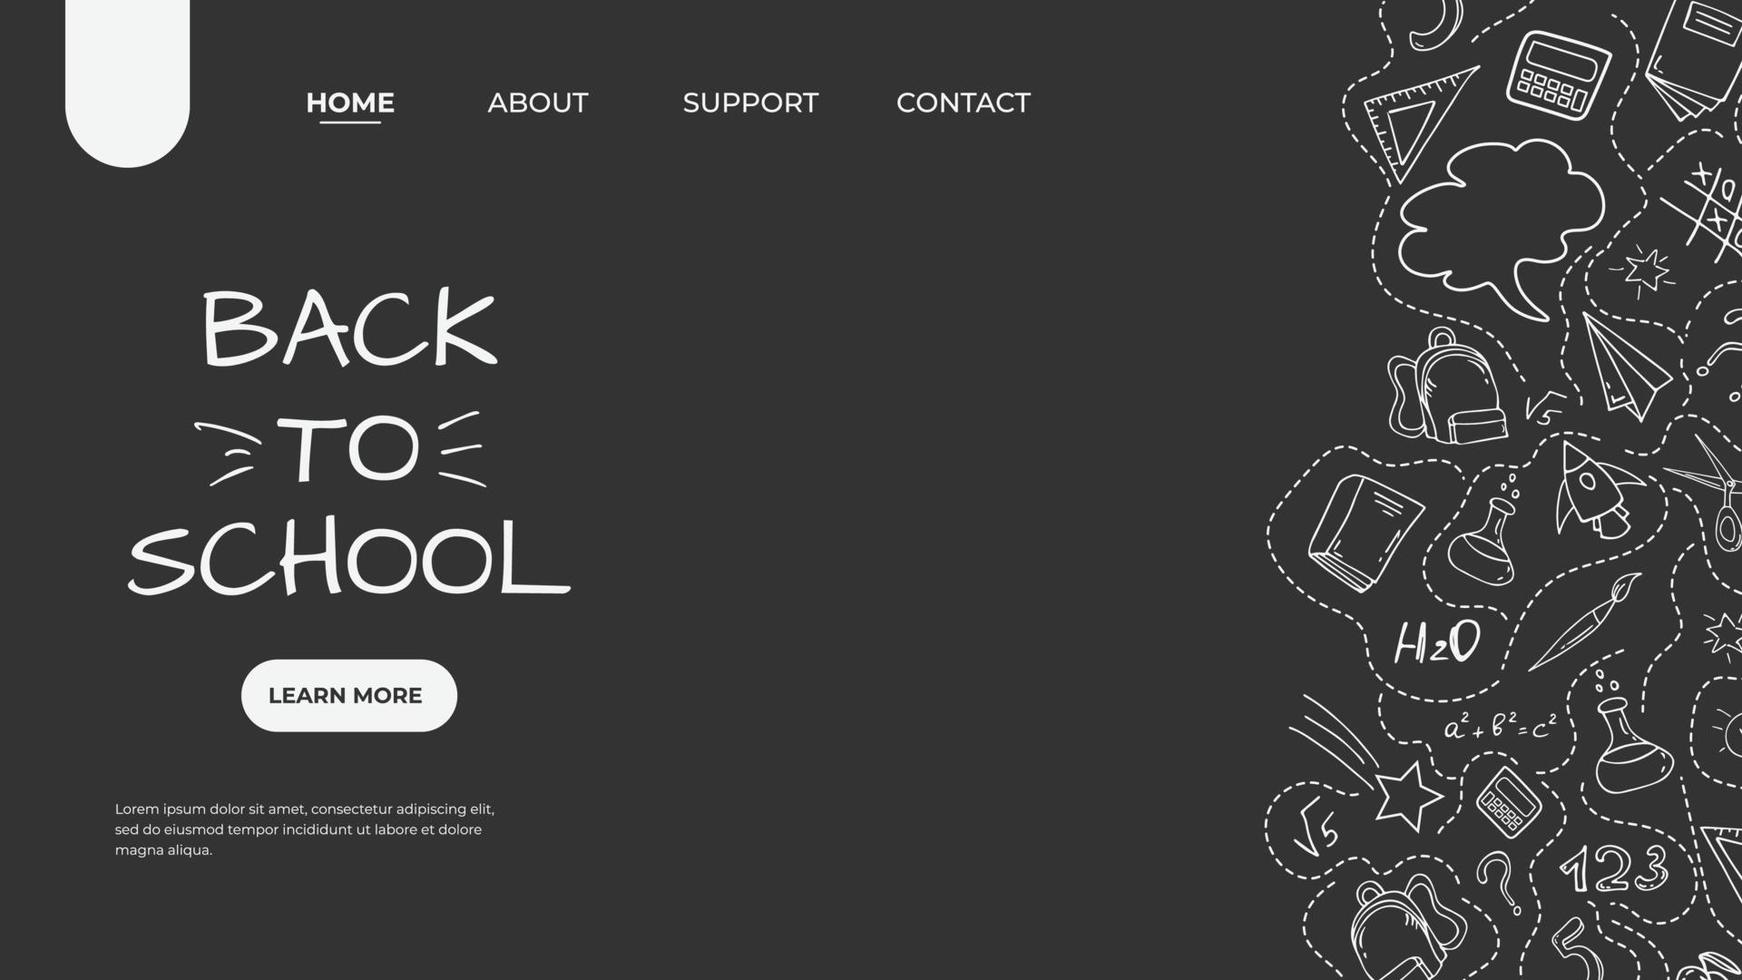 en målsida för skolor och andra utbildningsinstitutioner. doodle stil illustrationer av skolmaterial. webb banner mall för webbplats, målsida. vektor. vektor